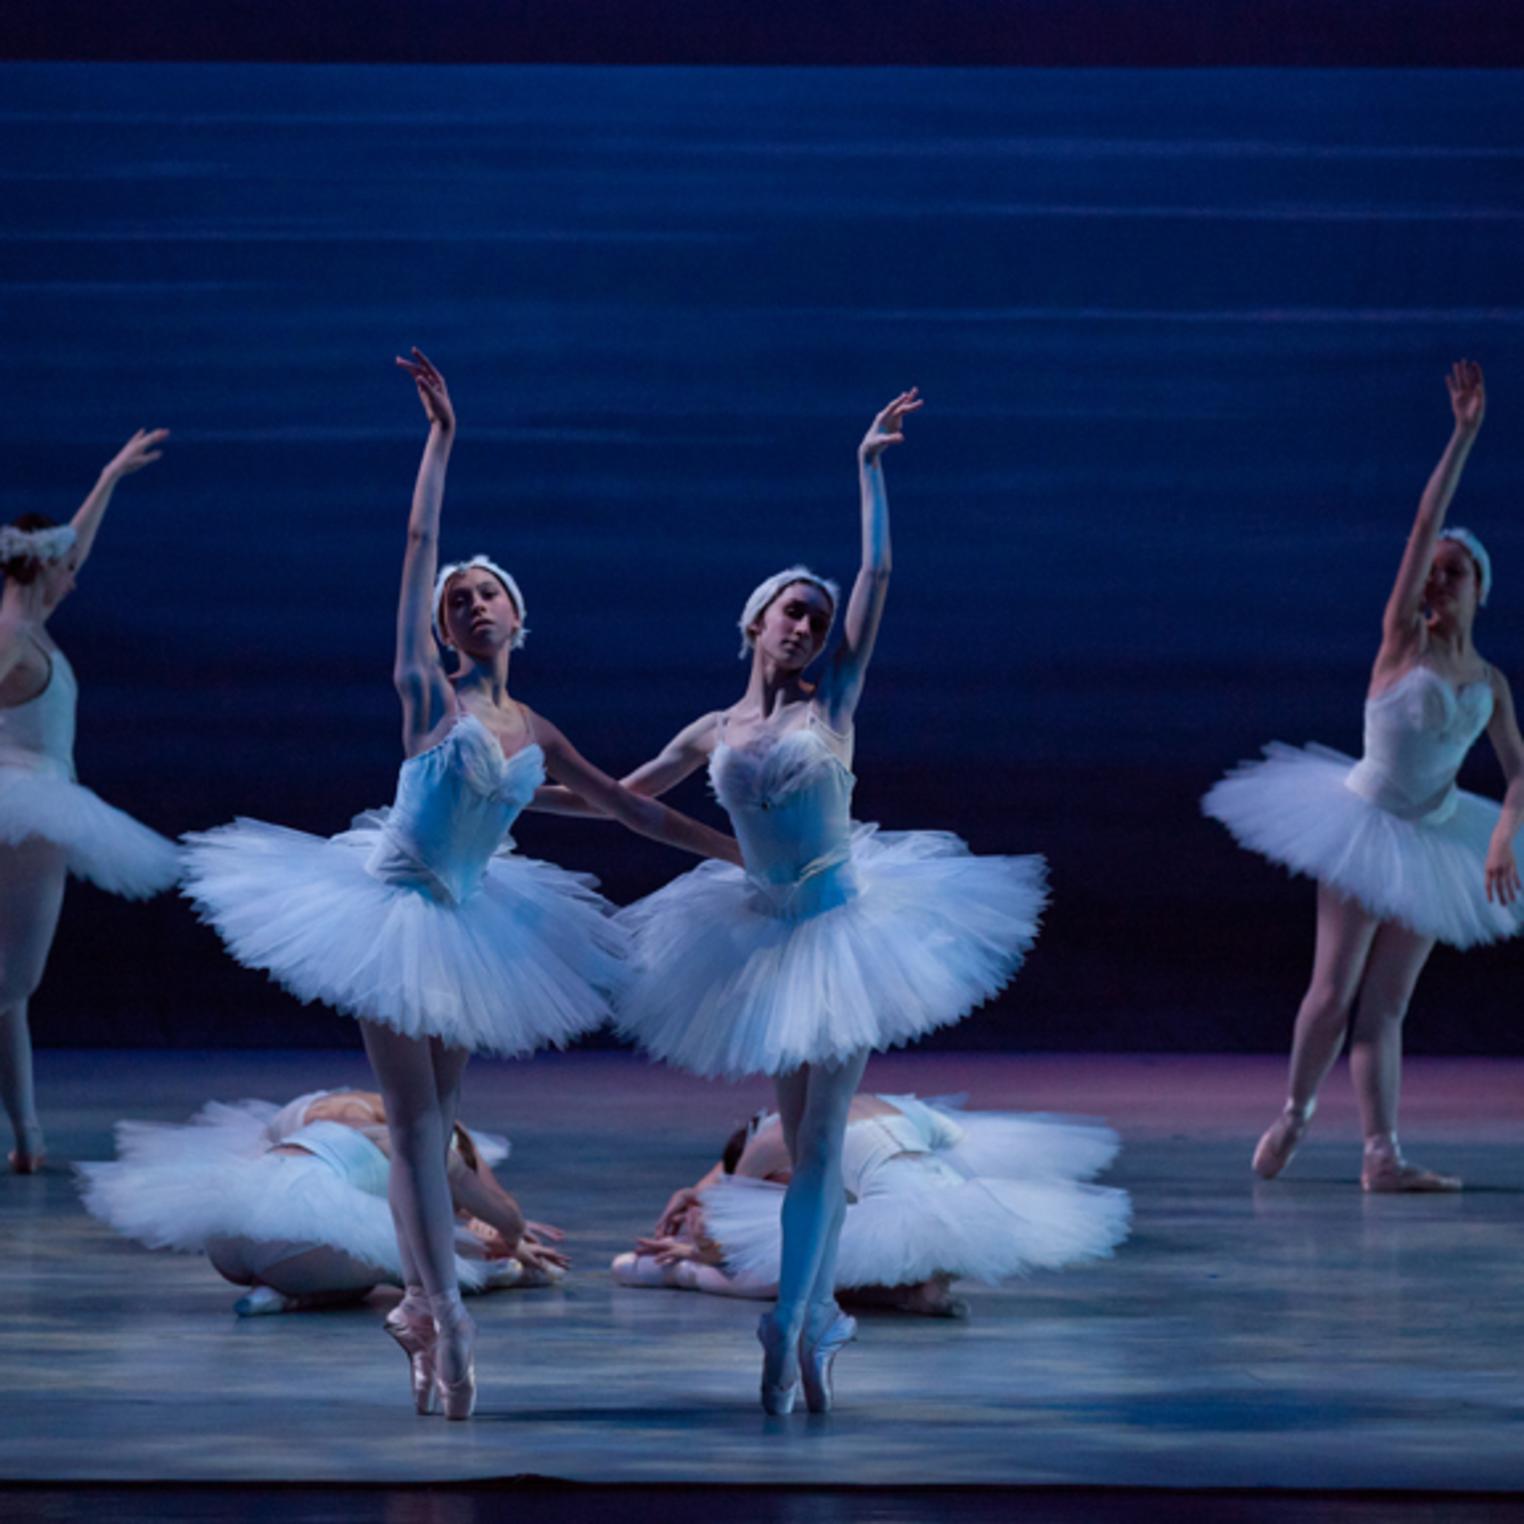 Swan Lake, choreography by Laszlo Berdo